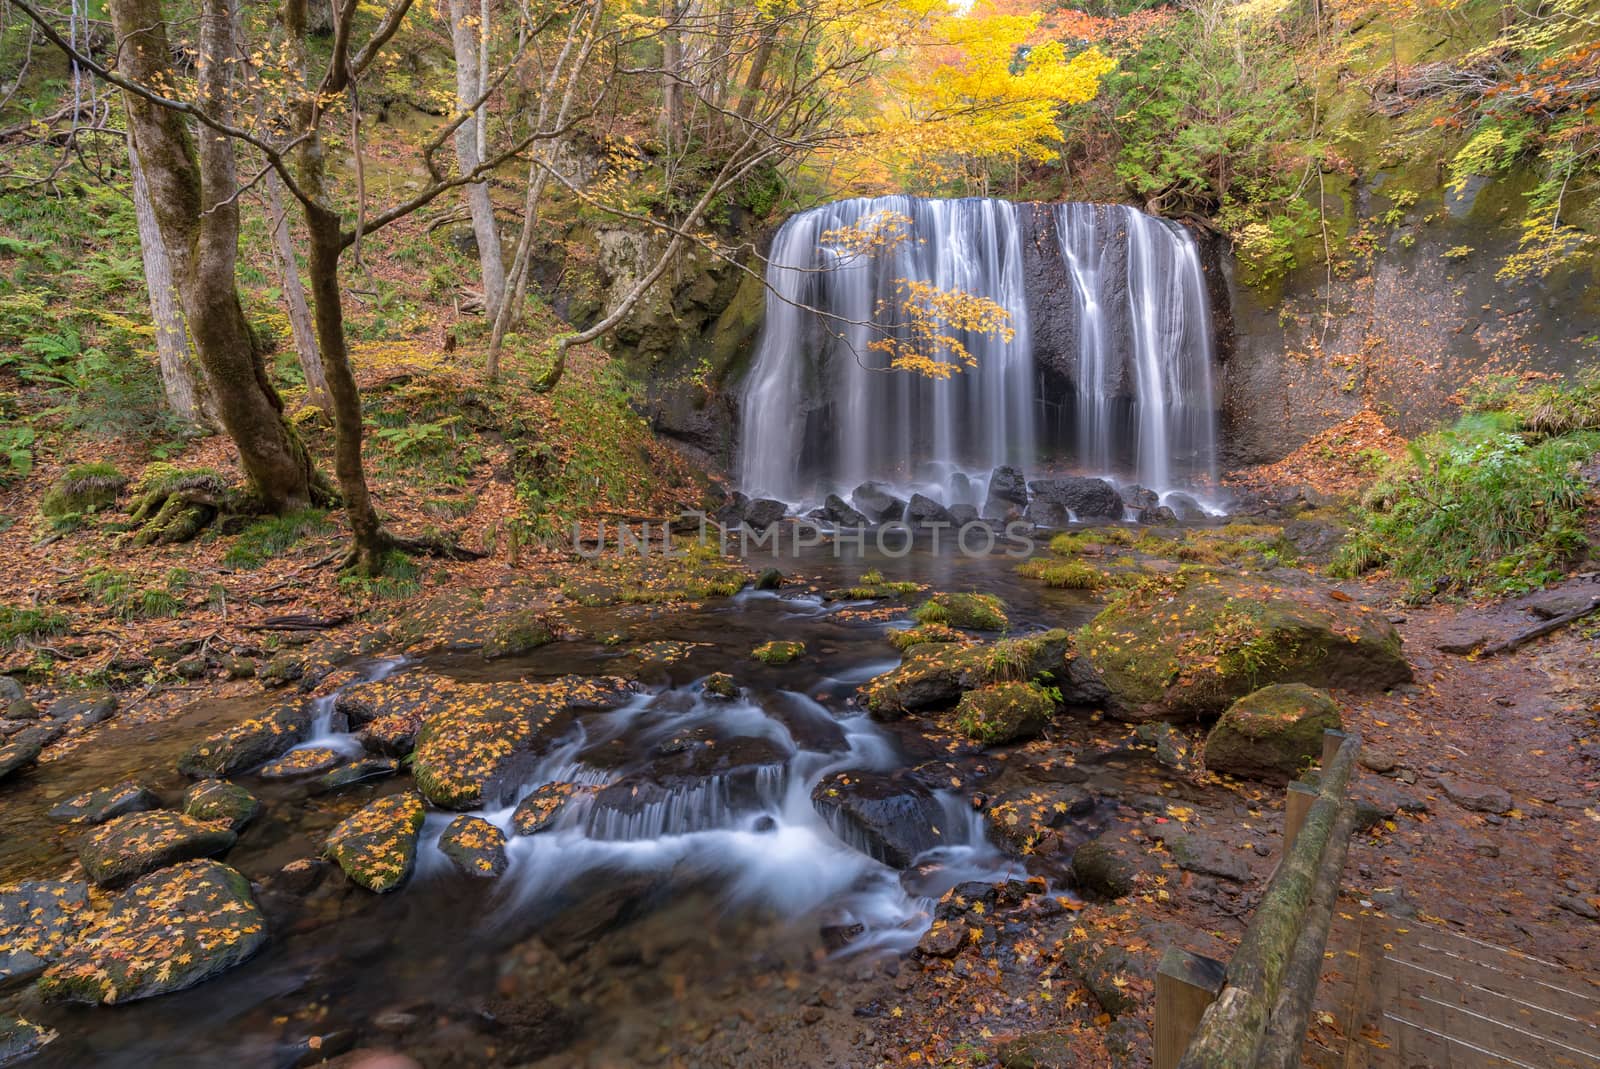 Tatsuzawafudo Waterfall Fukushima by vichie81